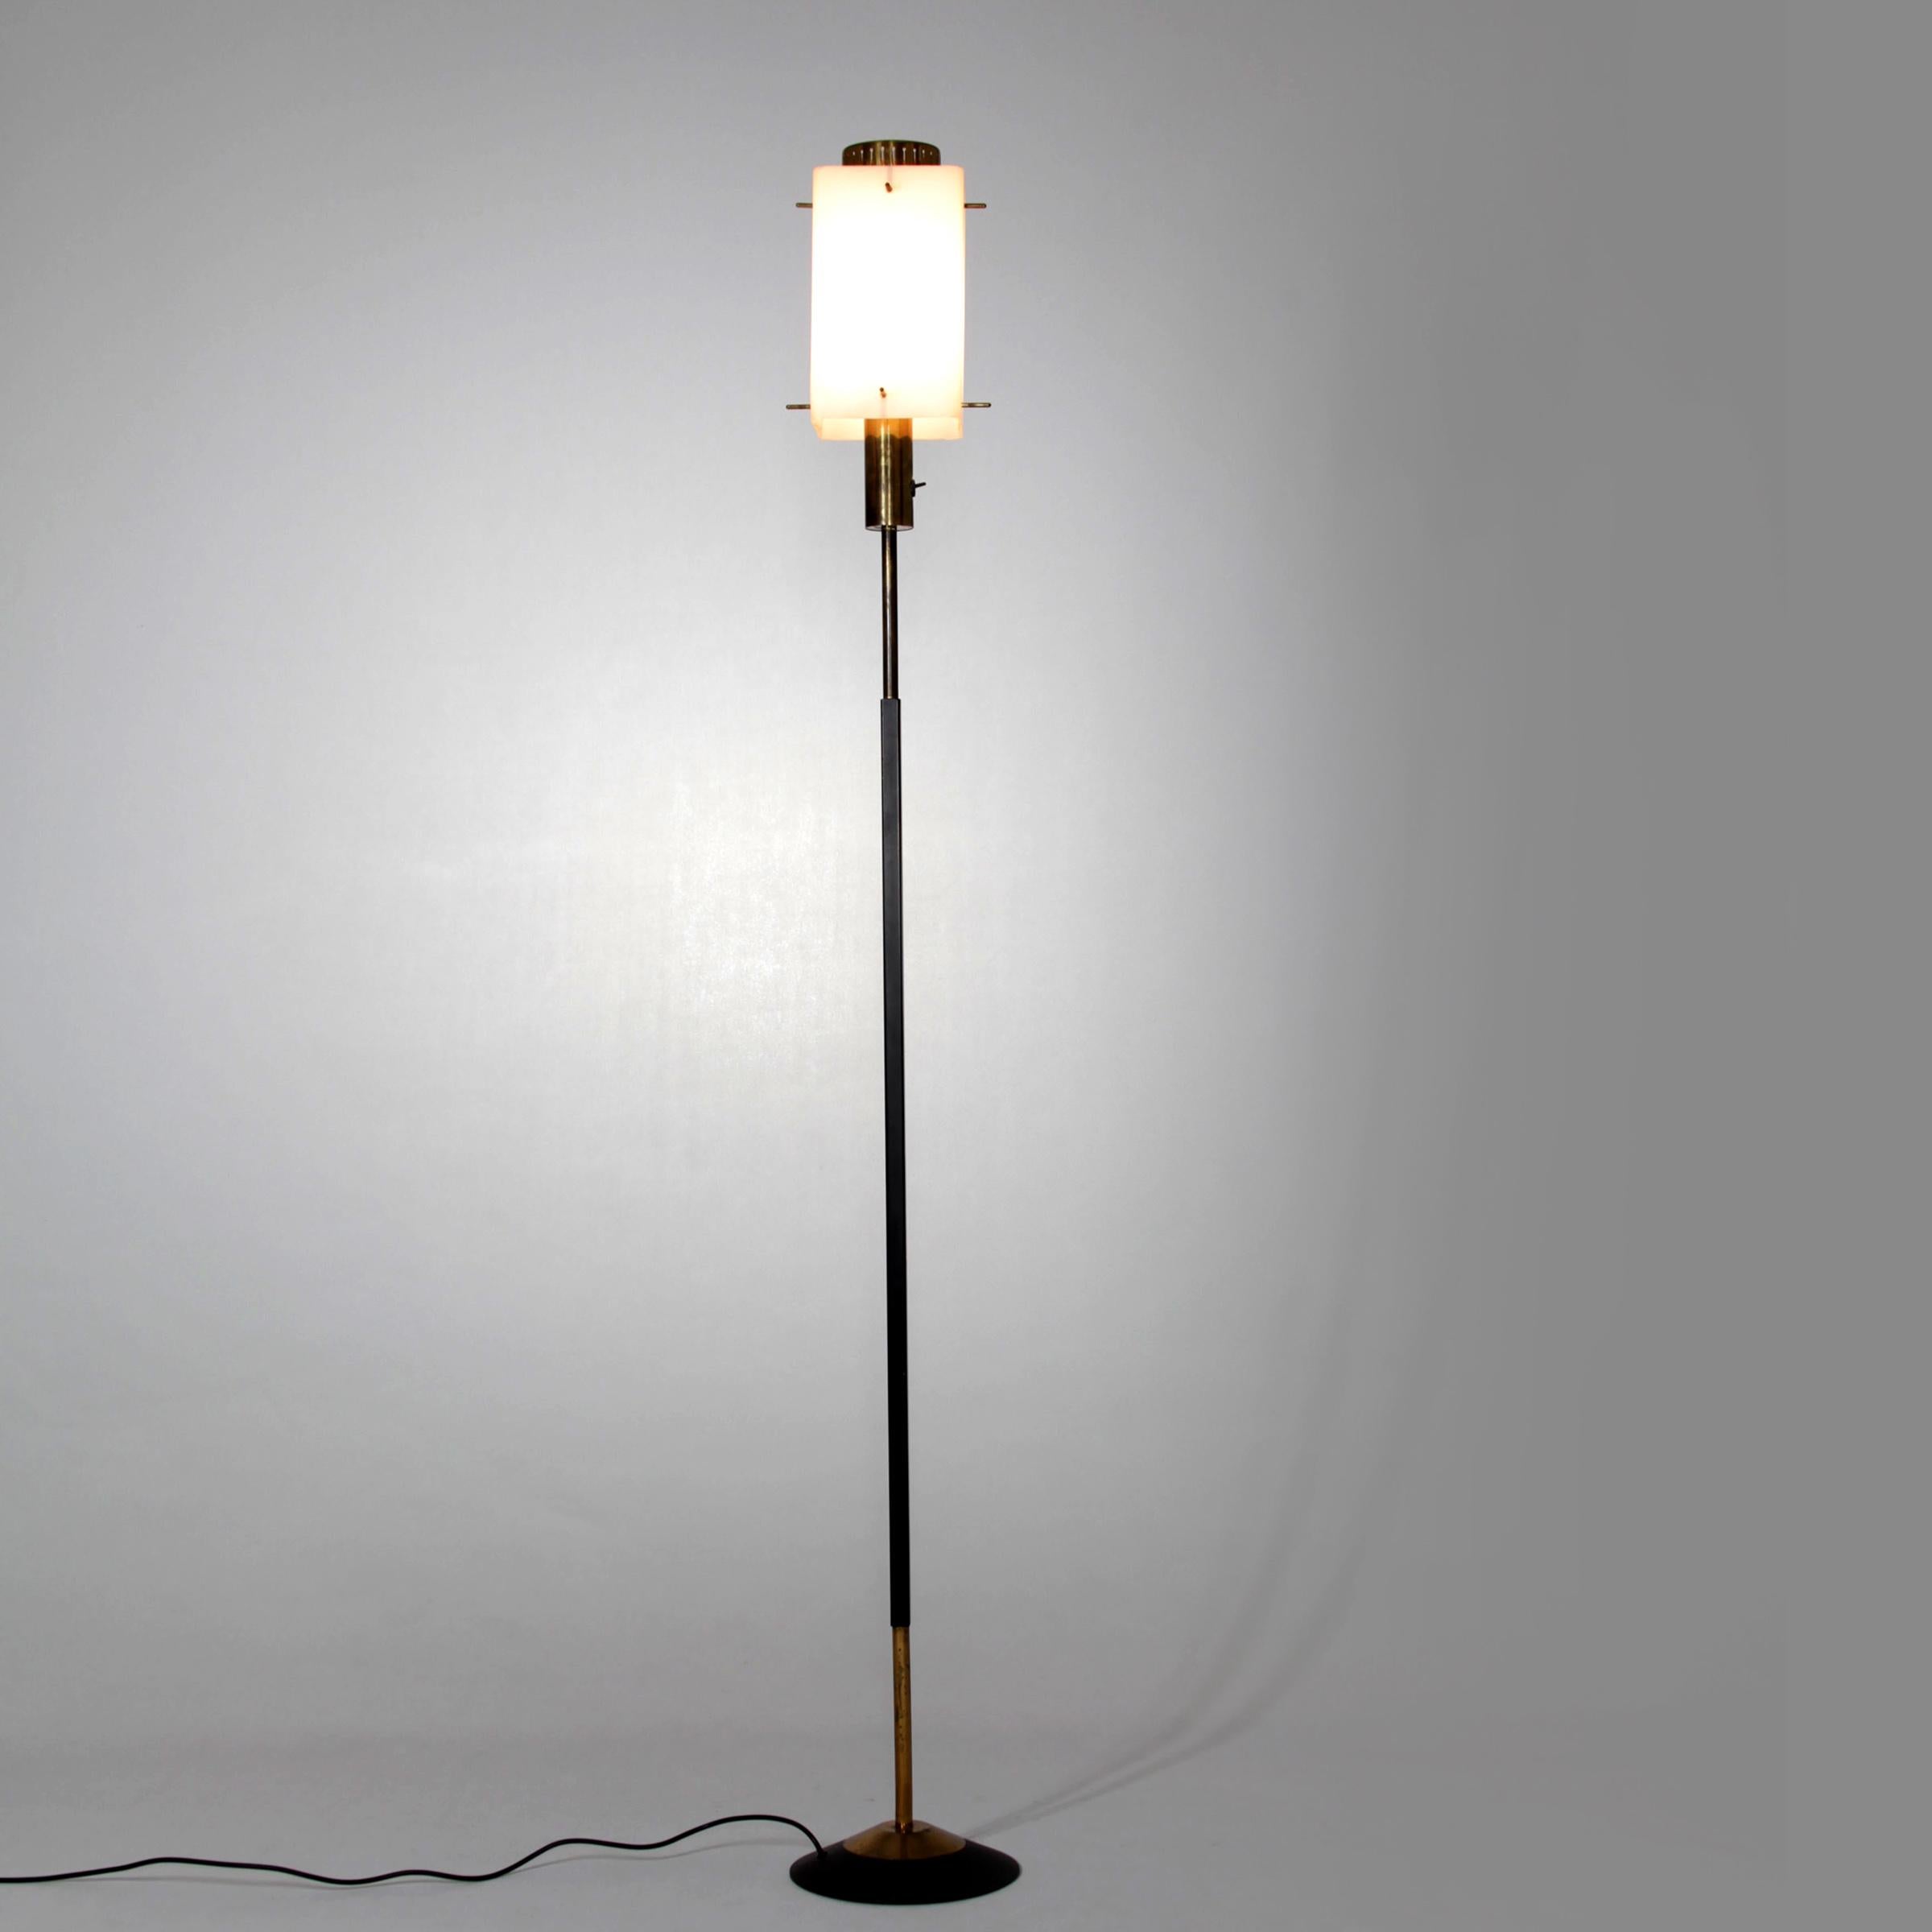 Rare lampadaire italien Stilnovo des années 1950. La lampe se caractérise par un abat-jour en verre opalin, un cadre laqué et des éléments en laiton.
Abat-jour 15 x 15x 25 cm